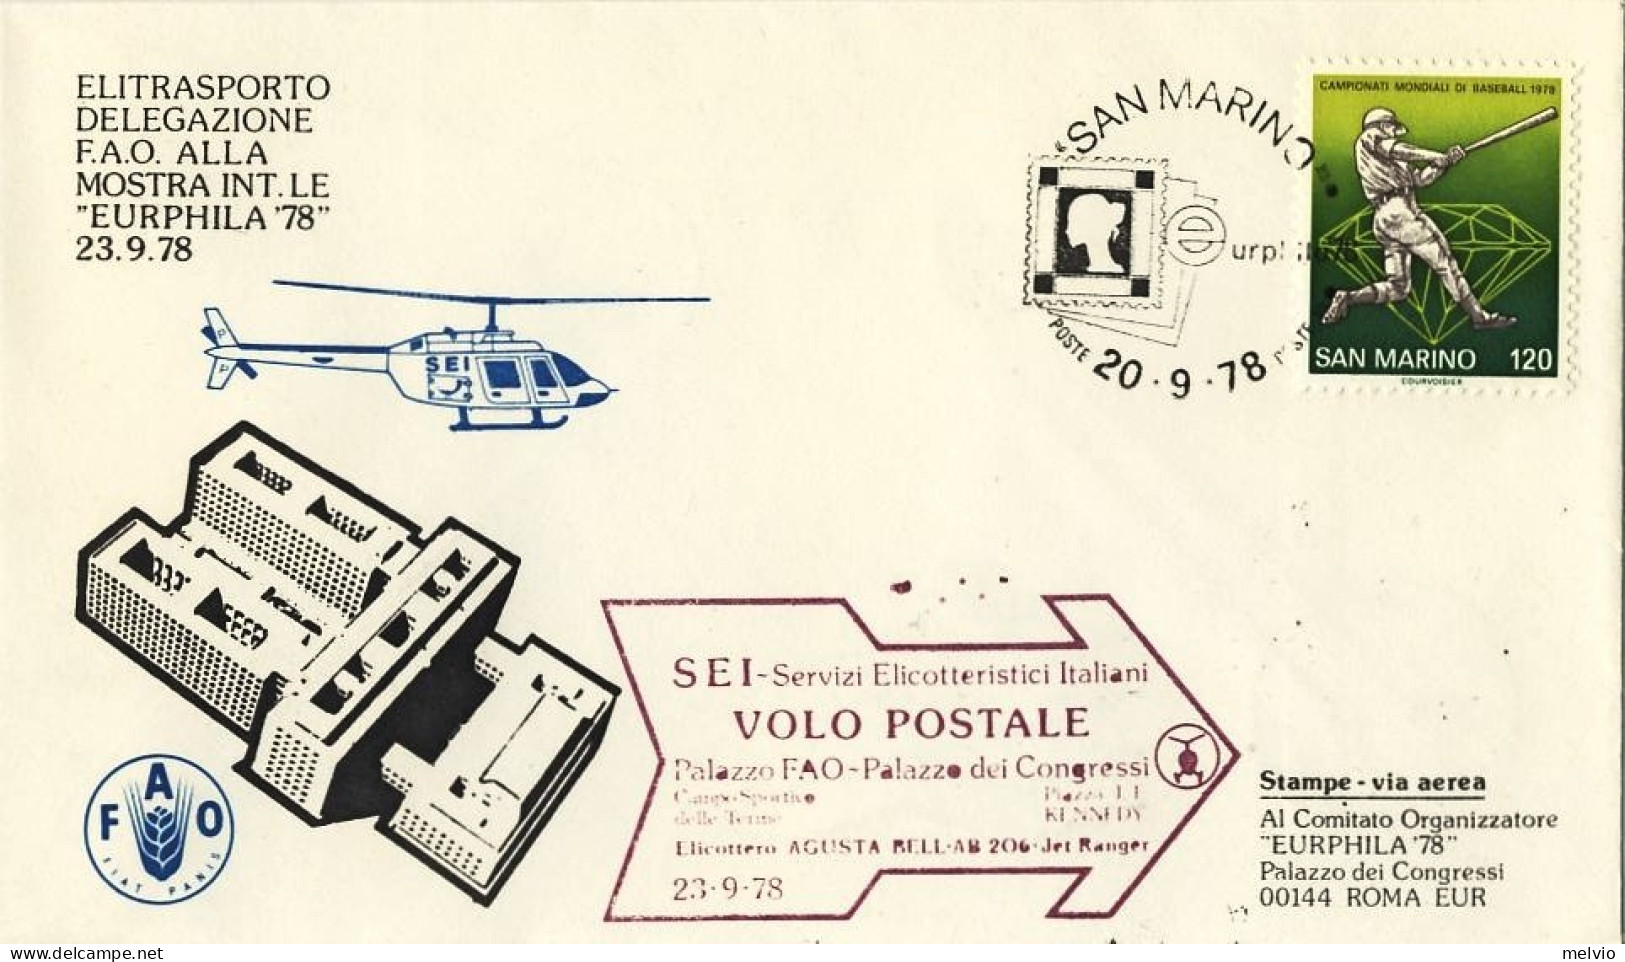 San Marino-1978 Elitrasporto Delegazione F.A.O.alla Mostra Internazionale Eurphi - Luftpost